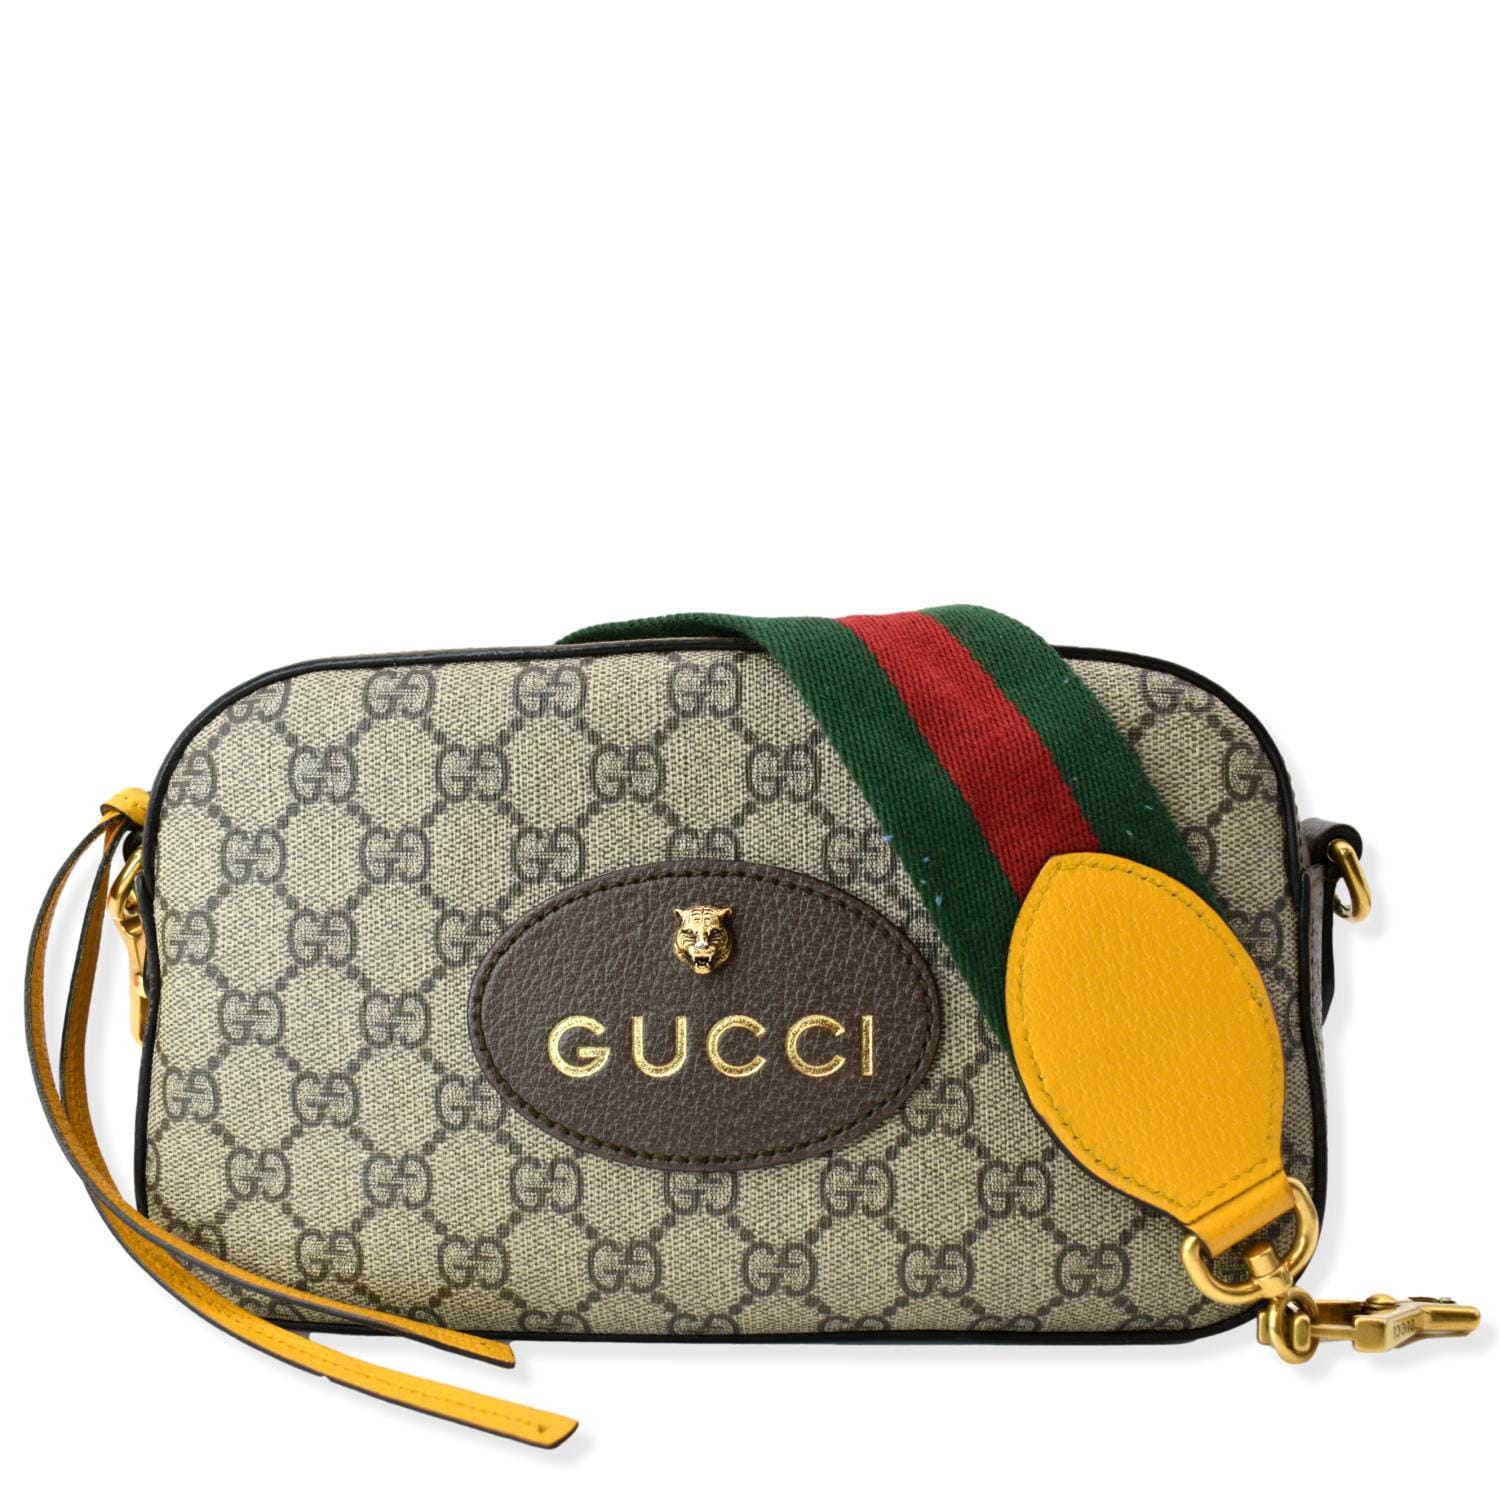 Gucci GG Supreme Neo Vintage Messenger Crossbody Bag,Beige